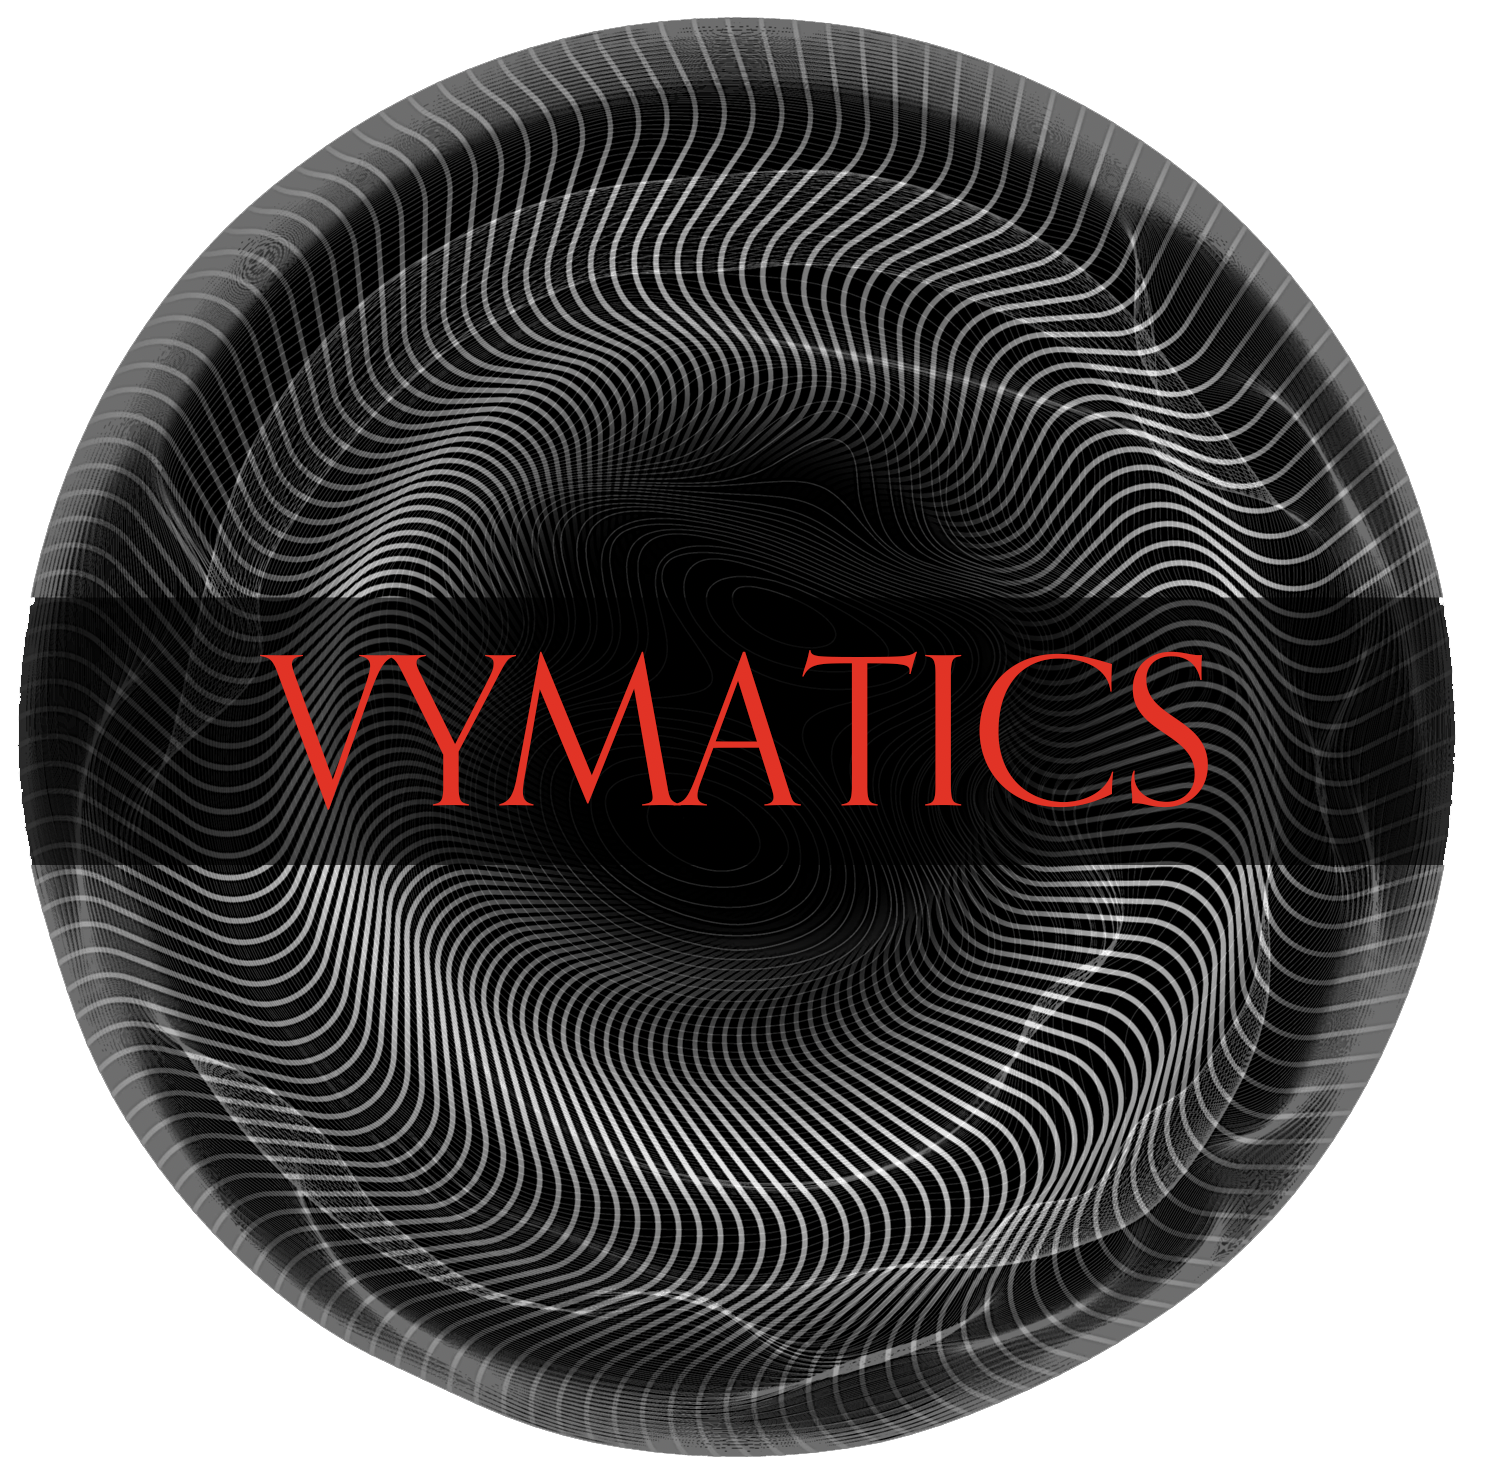 Vymatics